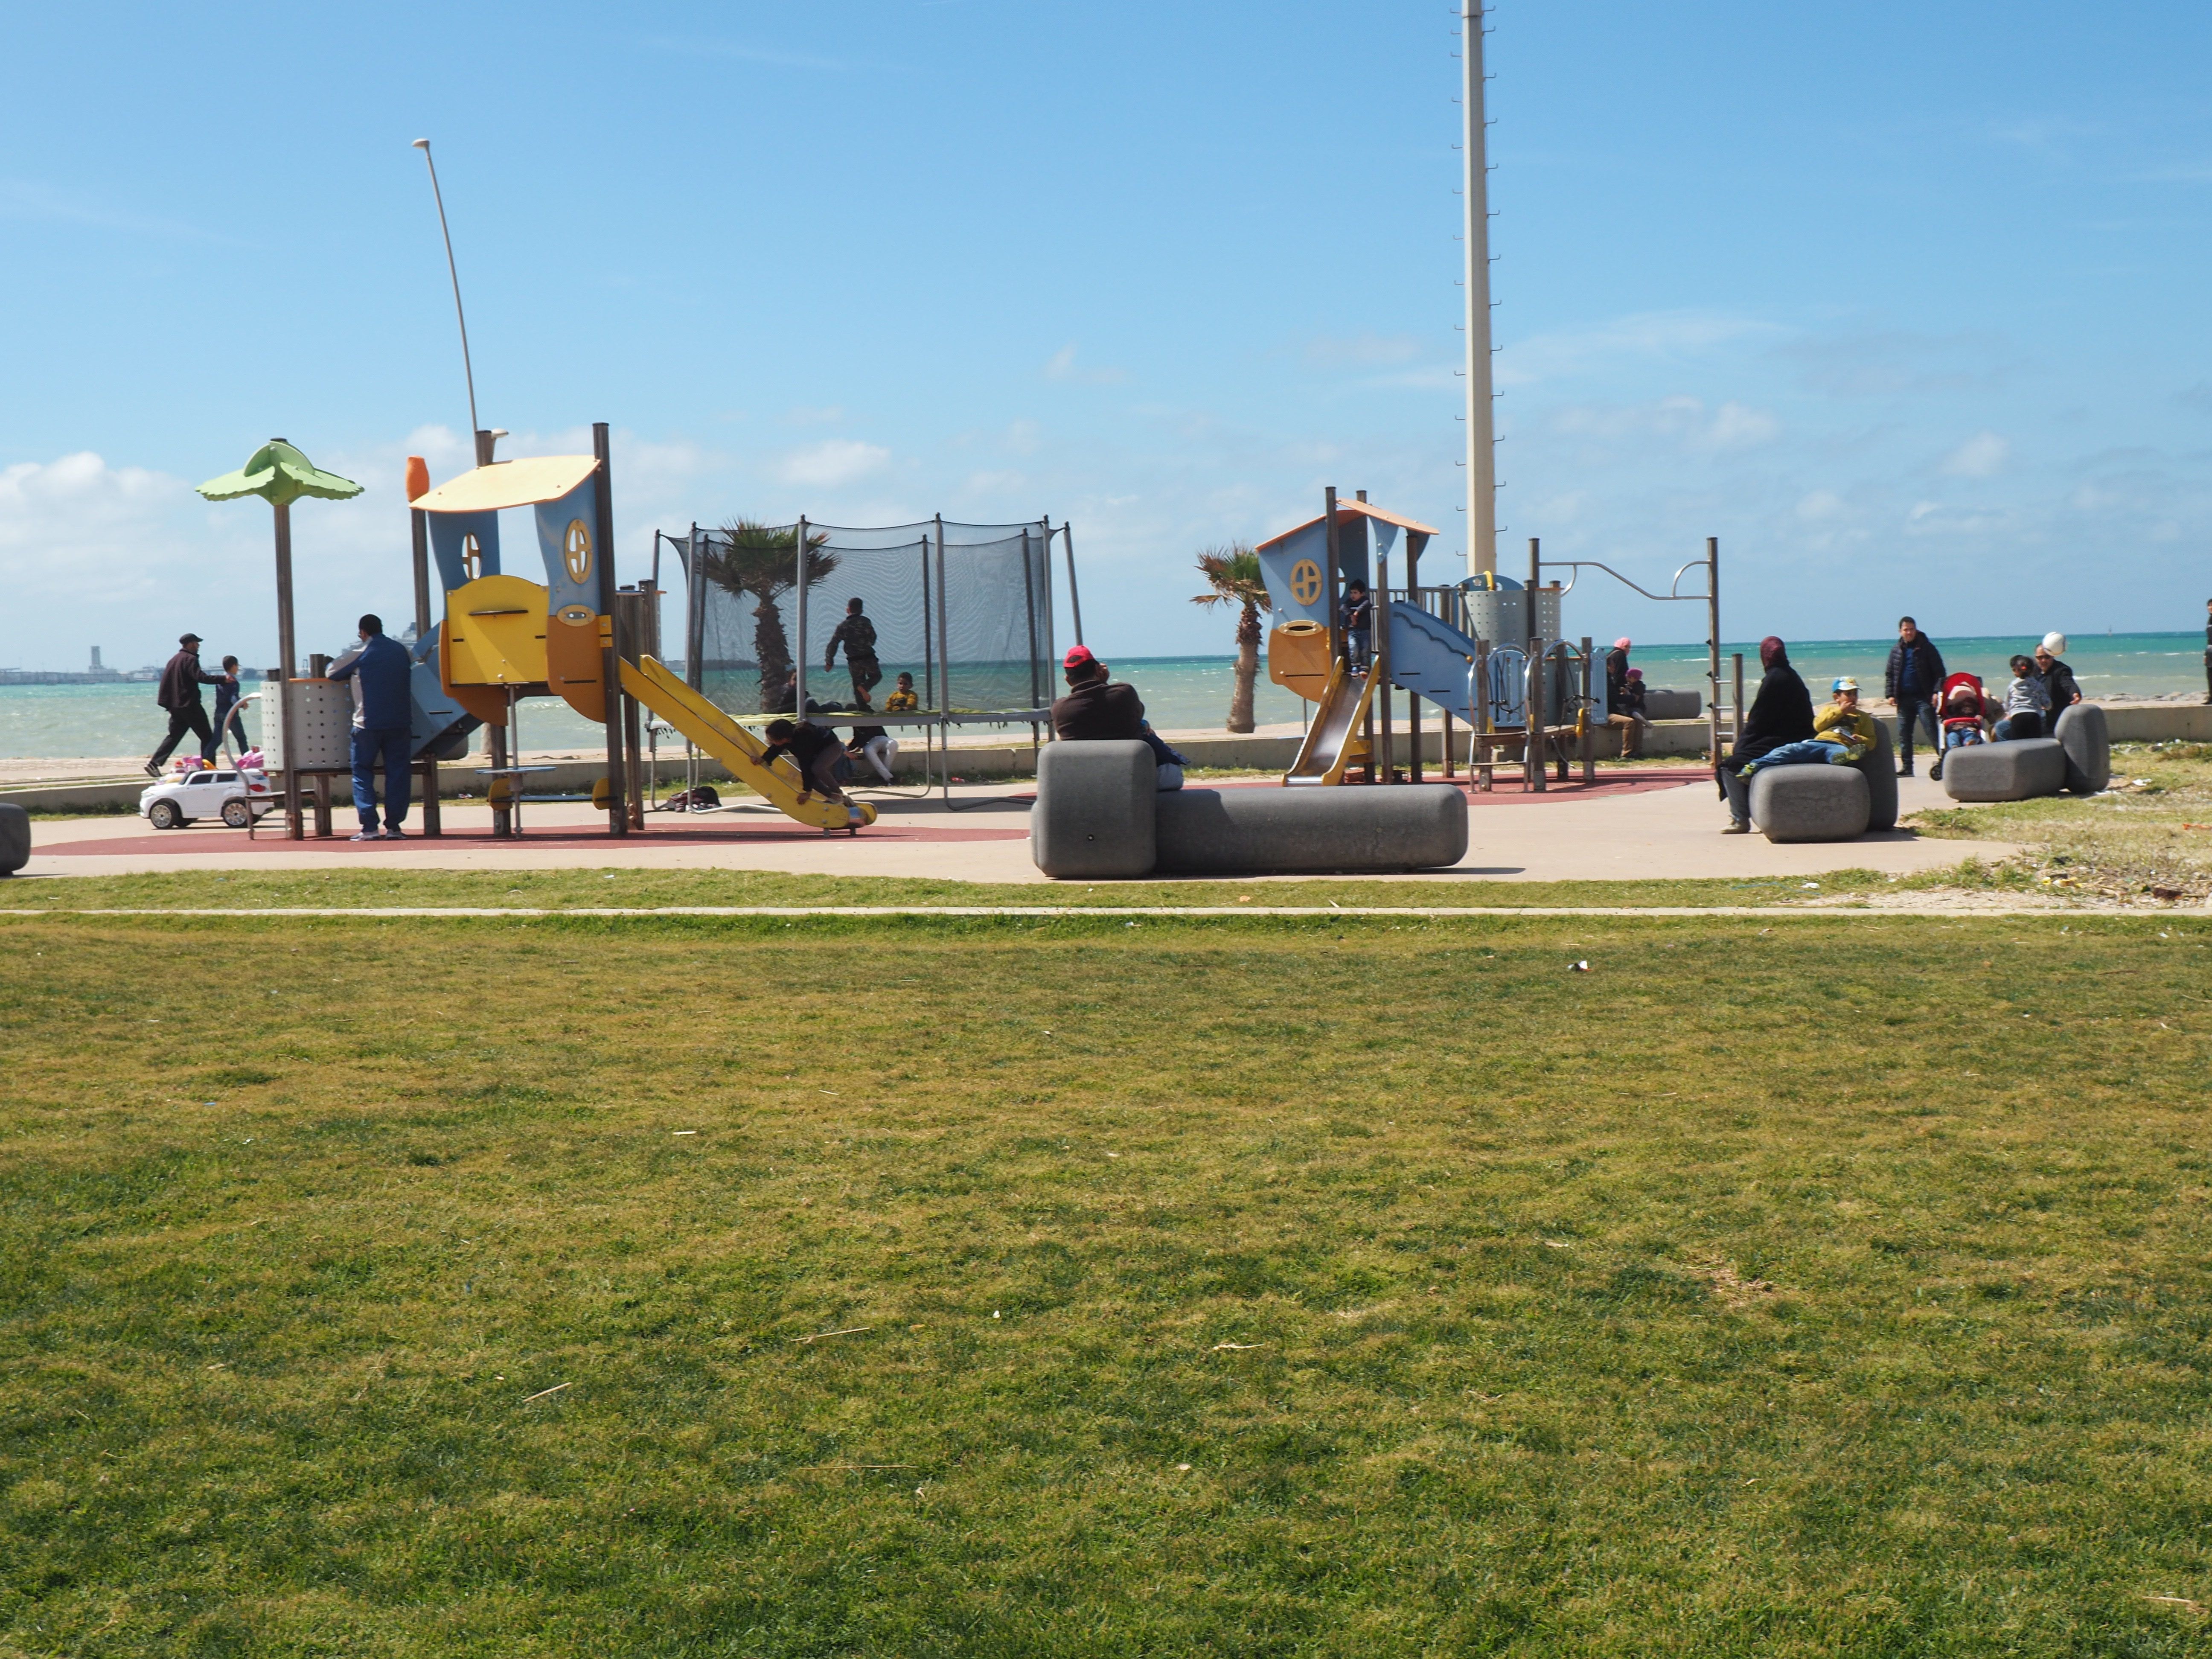 <p>View of the playground area in the Corniche Garden</p>